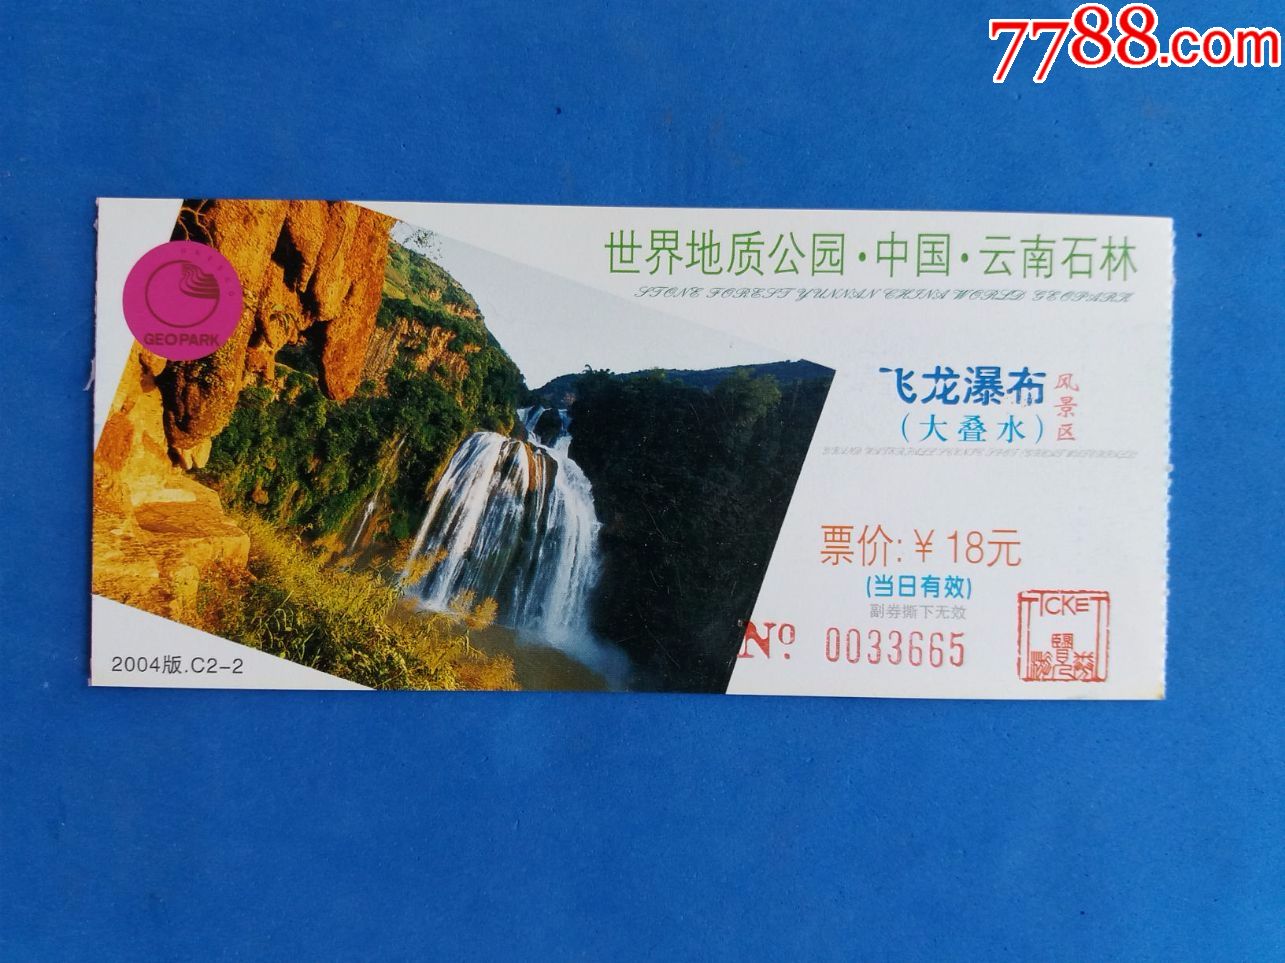 世界地质公园·中国·云南石林【飞龙瀑布(大叠水)】风景区门票(4枚)